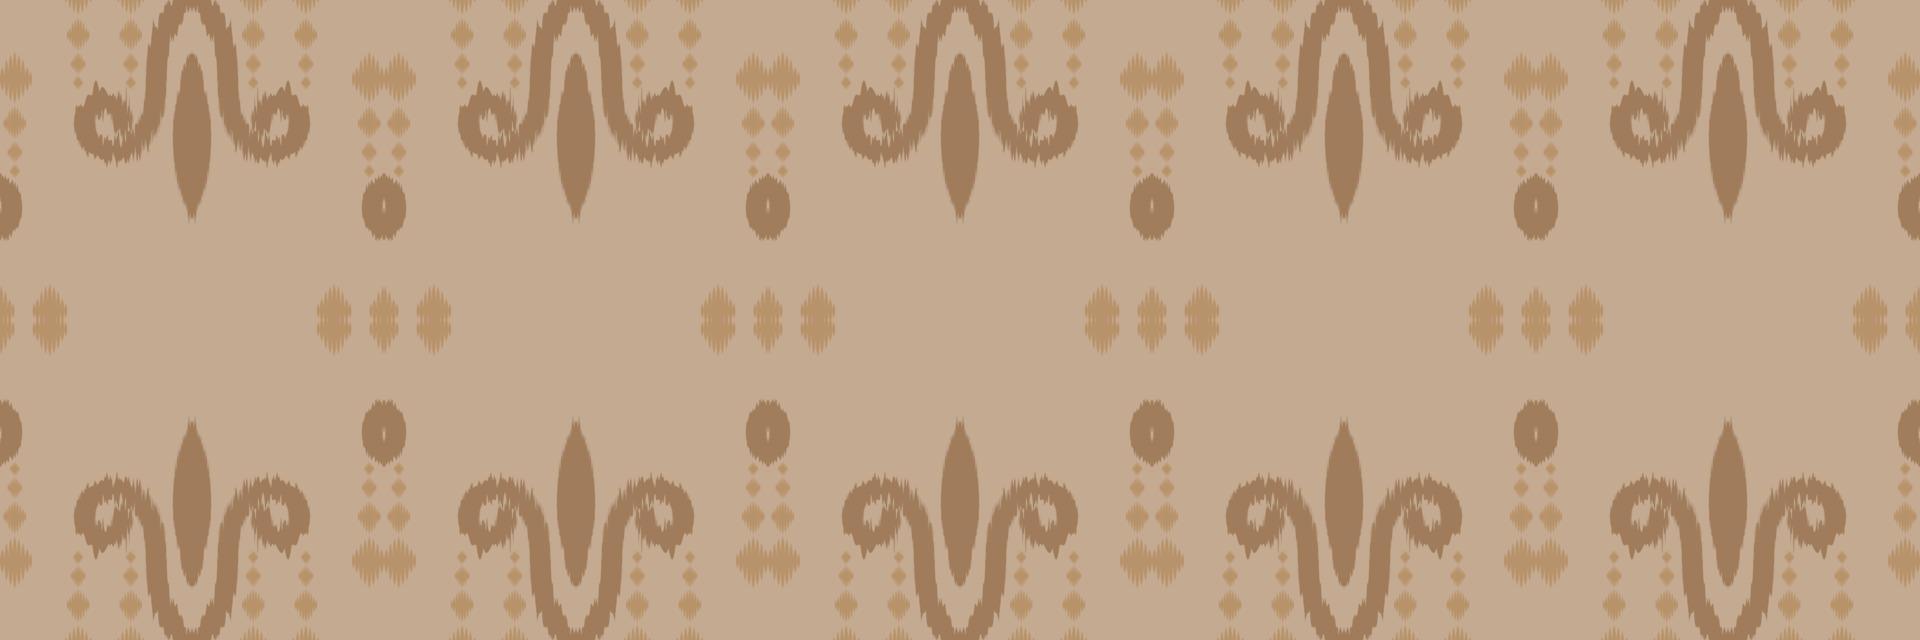 motiv ikat mönster batik textil- sömlös mönster digital vektor design för skriva ut saree kurti borneo tyg gräns borsta symboler färgrutor bomull